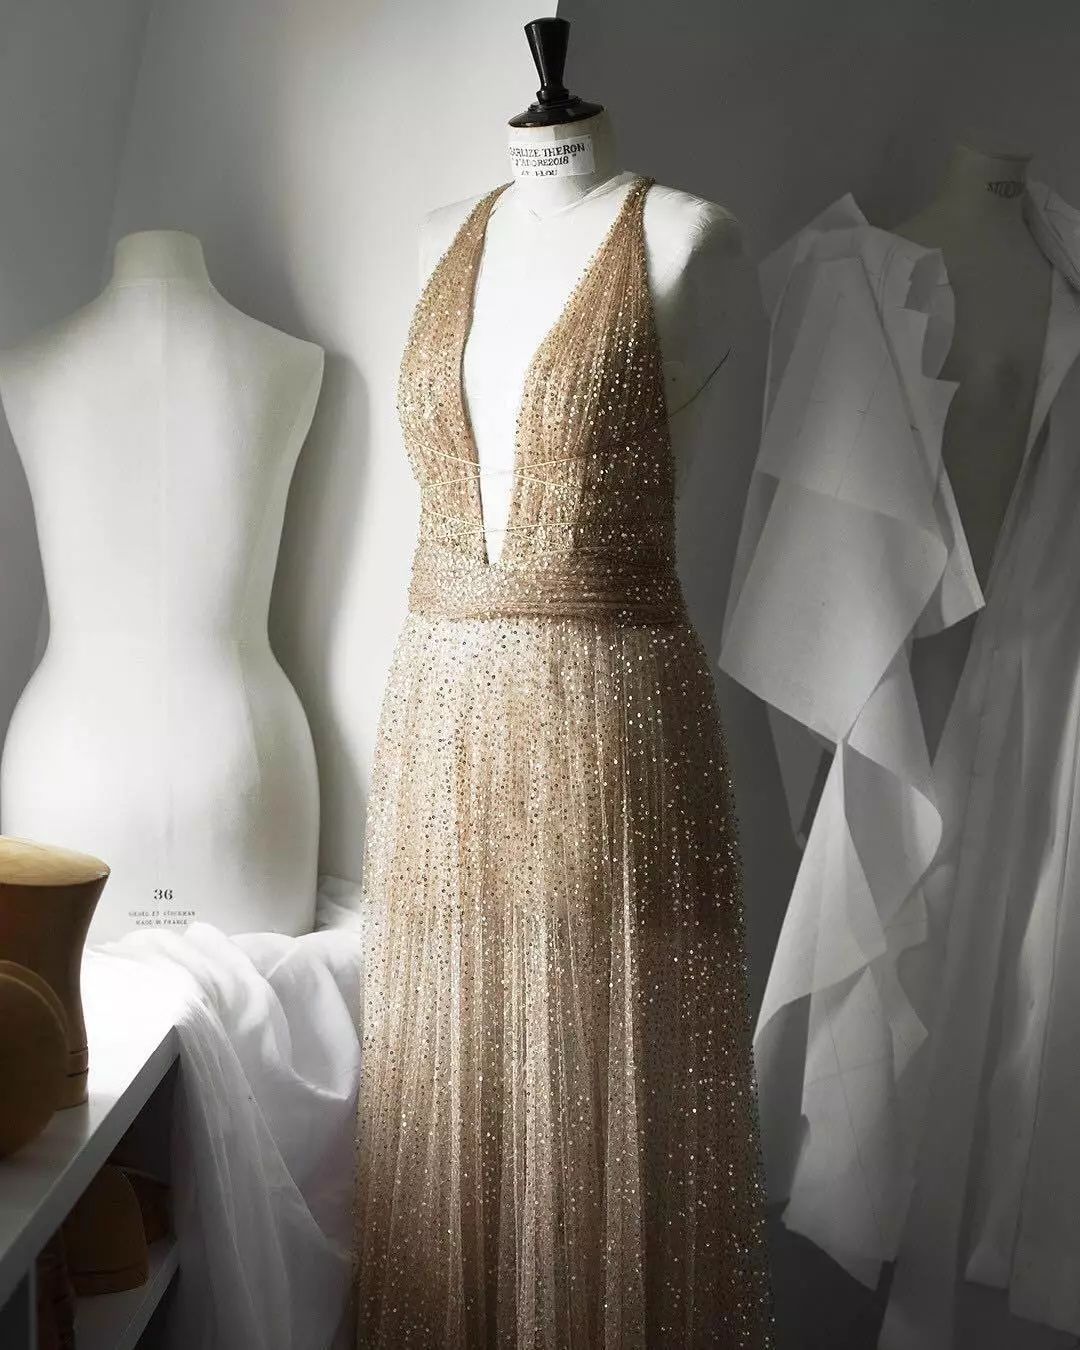 为什么说穿上Dior裙子是每个女孩的梦想？